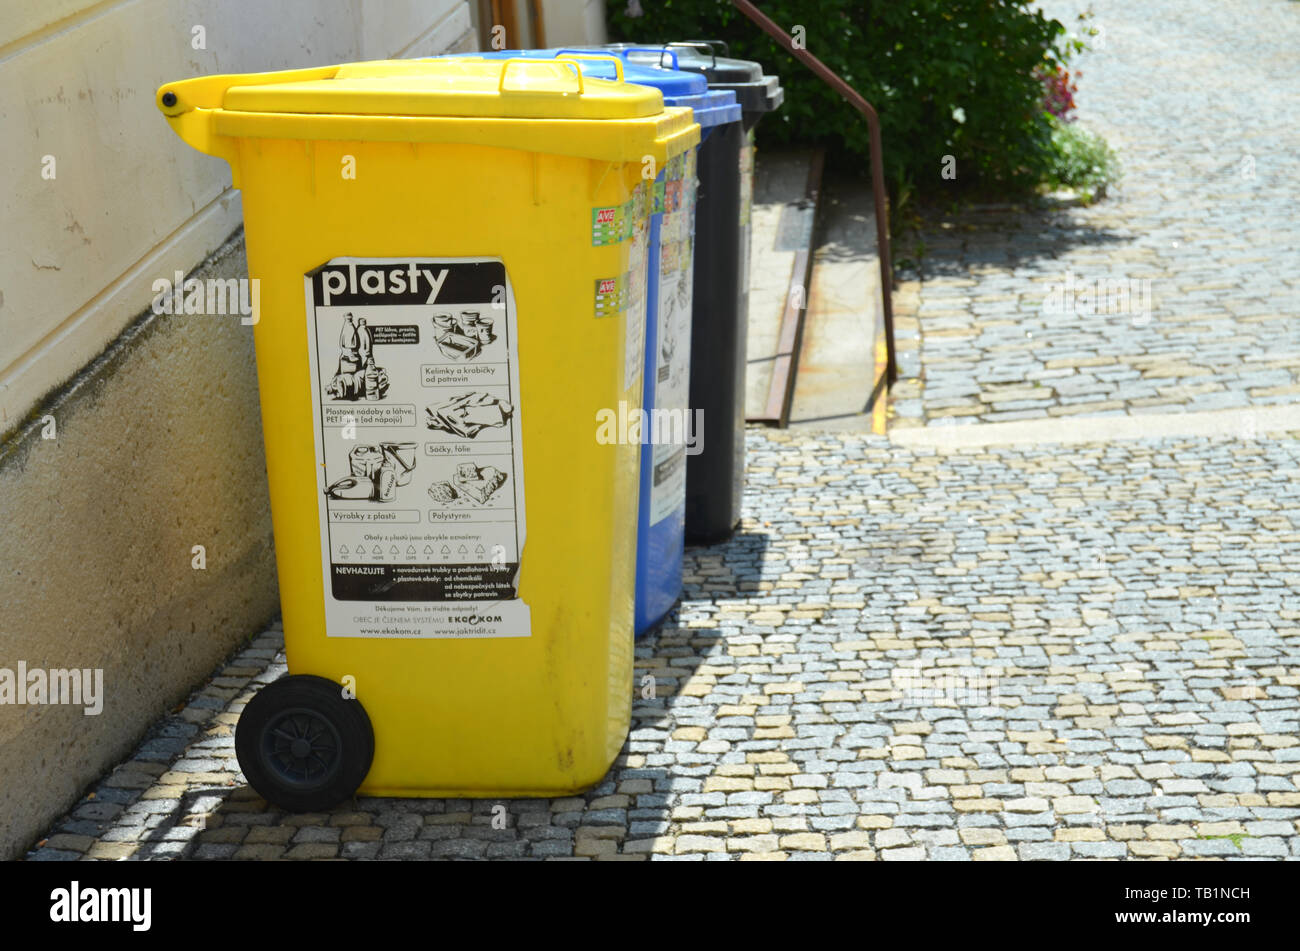 Les déchets plastiques poubelles pour le recyclage et le tri des déchets sur une vieille rue avec chaussée de pierre avec des messages sur la République tchèque. Banque D'Images